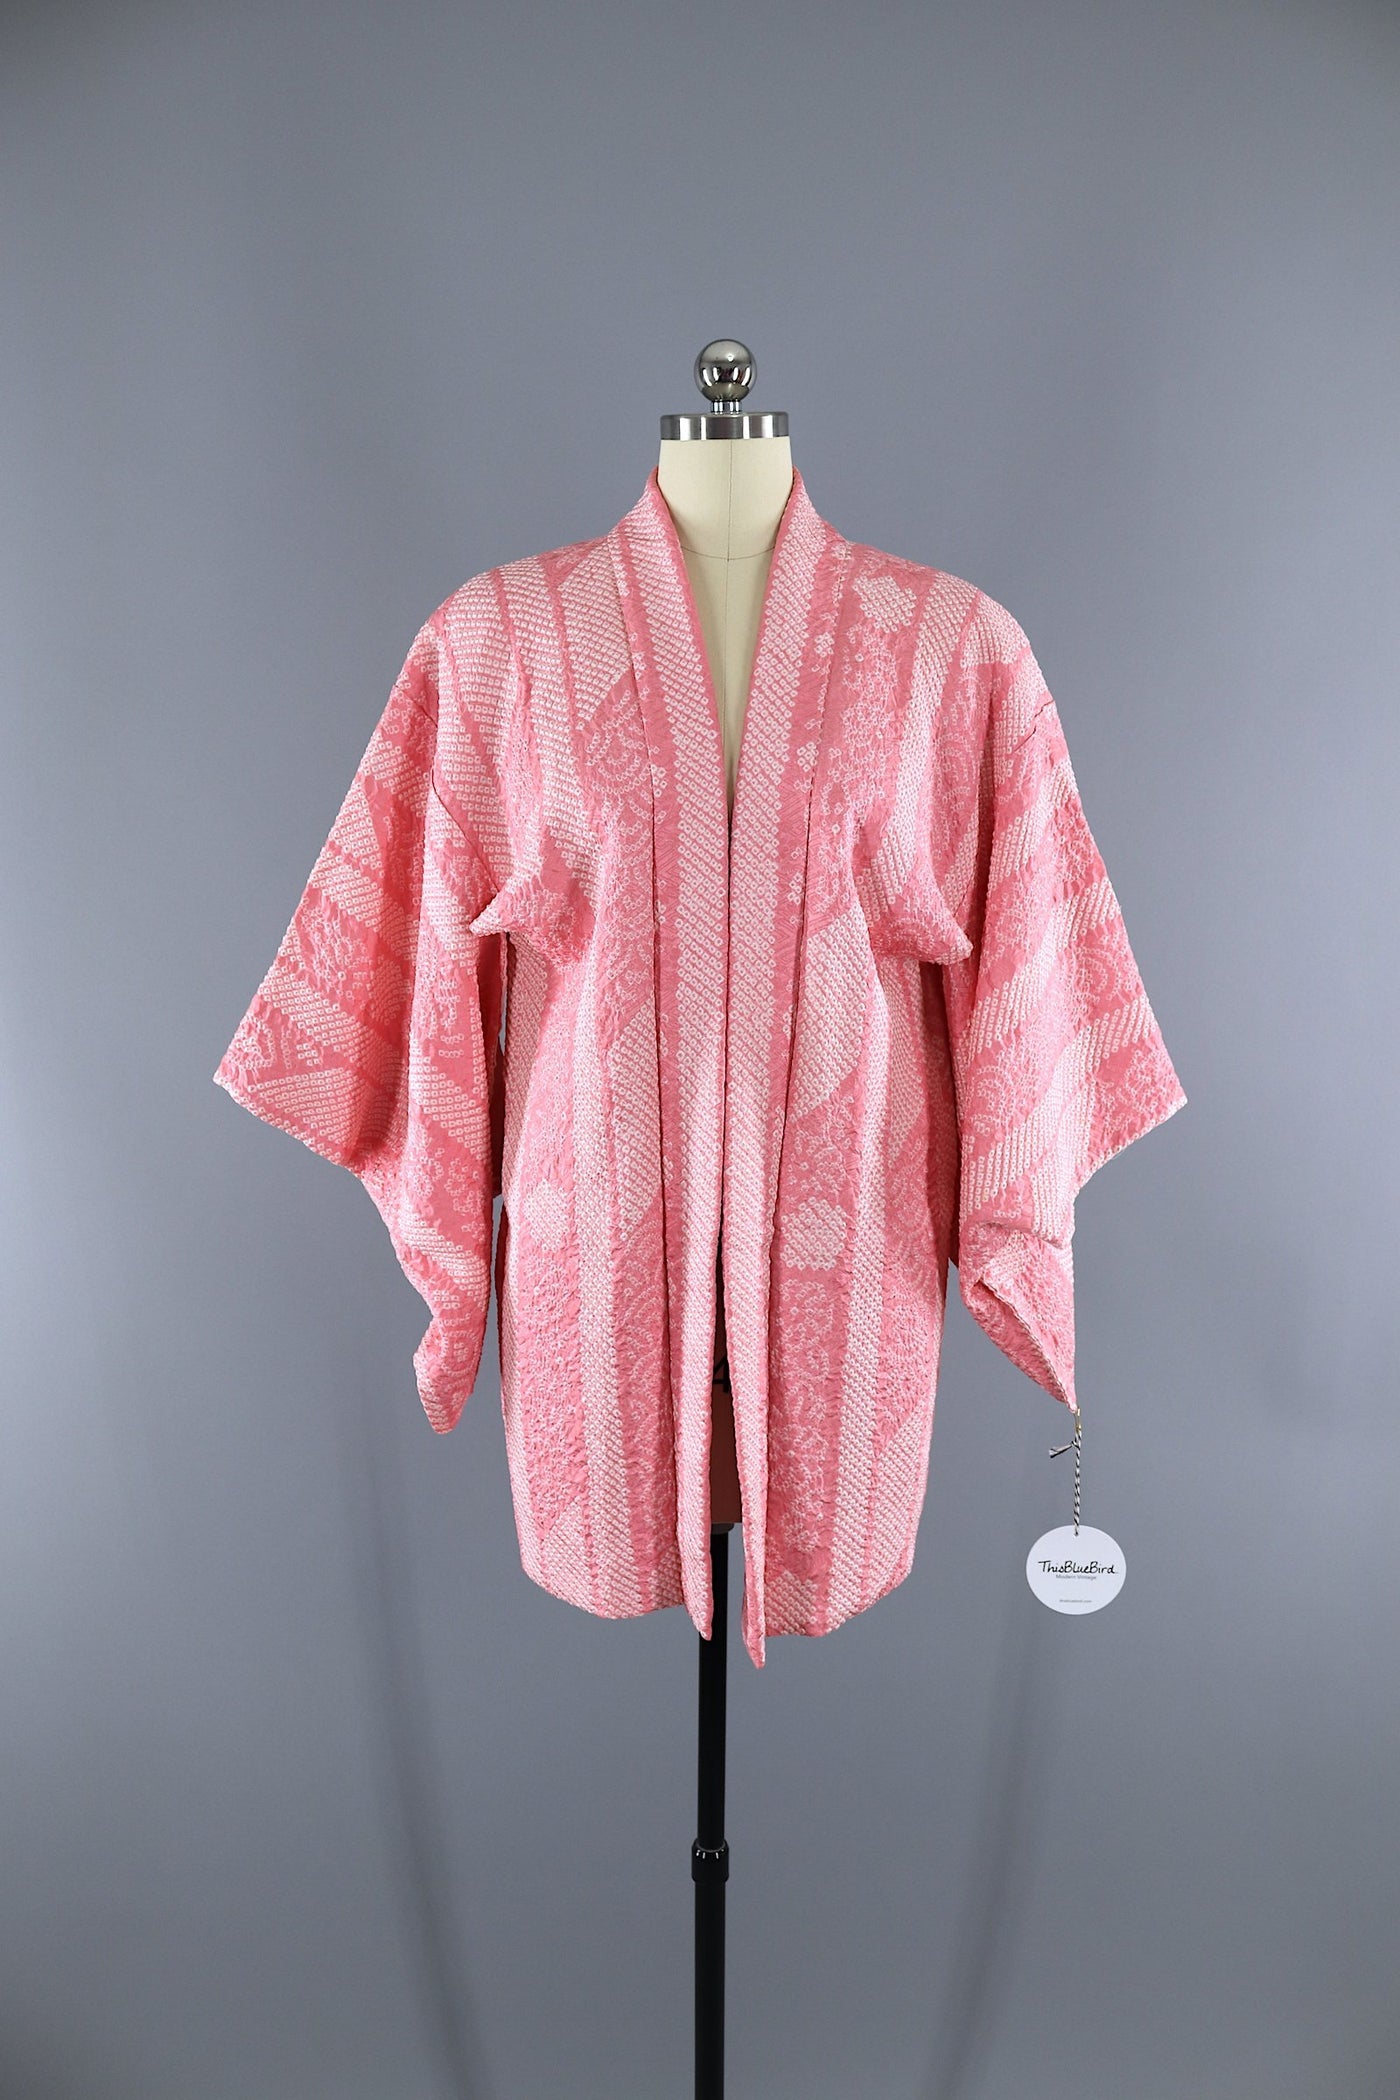 Vintage 1950s - 1960s Silk Kimono Jacket Cardigan / Pink & White Shibori - ThisBlueBird